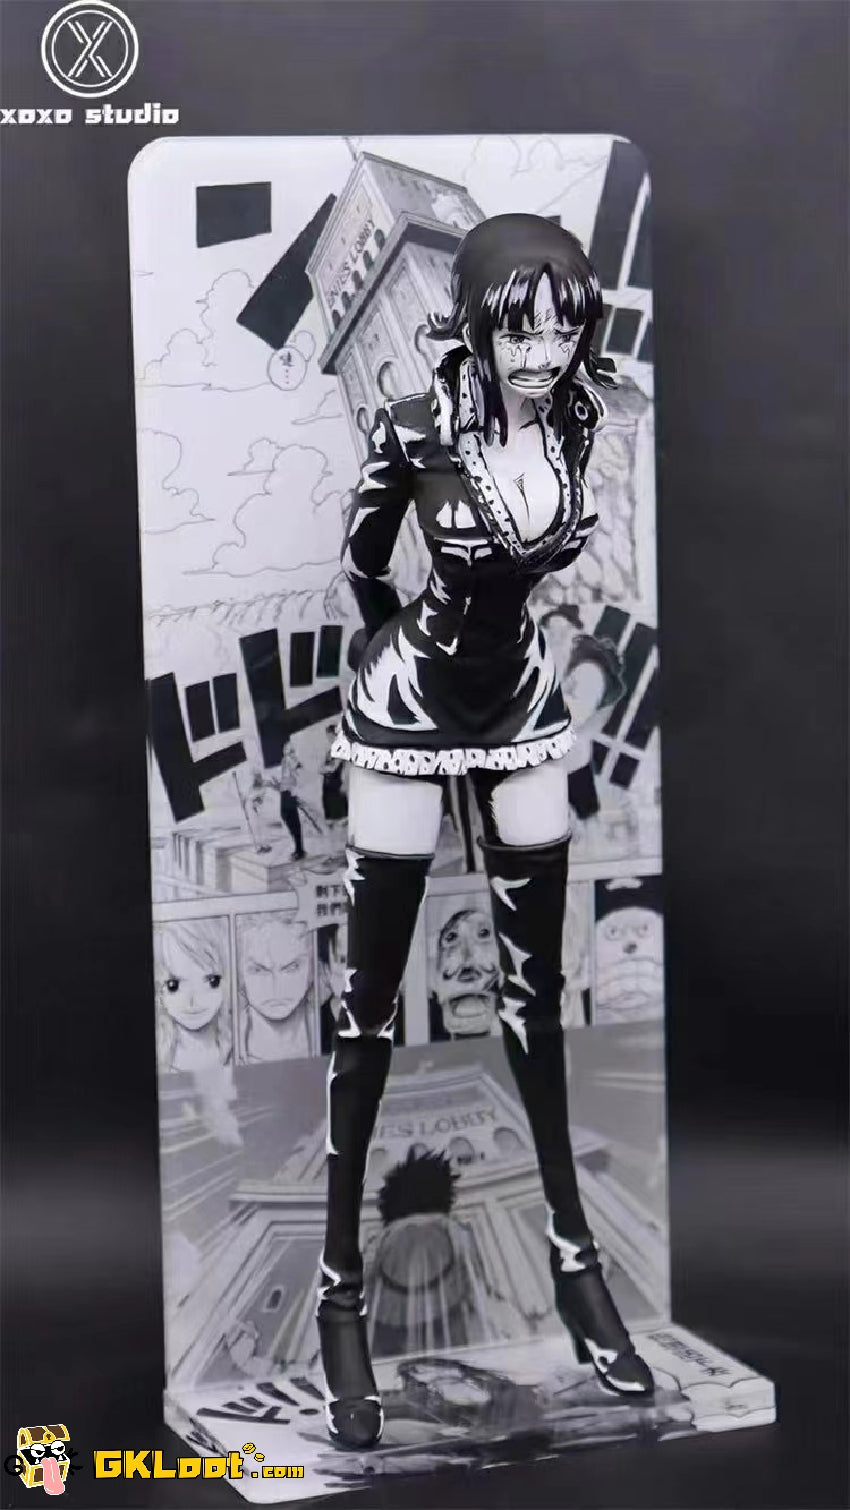 [Out of stock] Xoxo studio One Piece Black & White Manga Series Nico Robin Statue